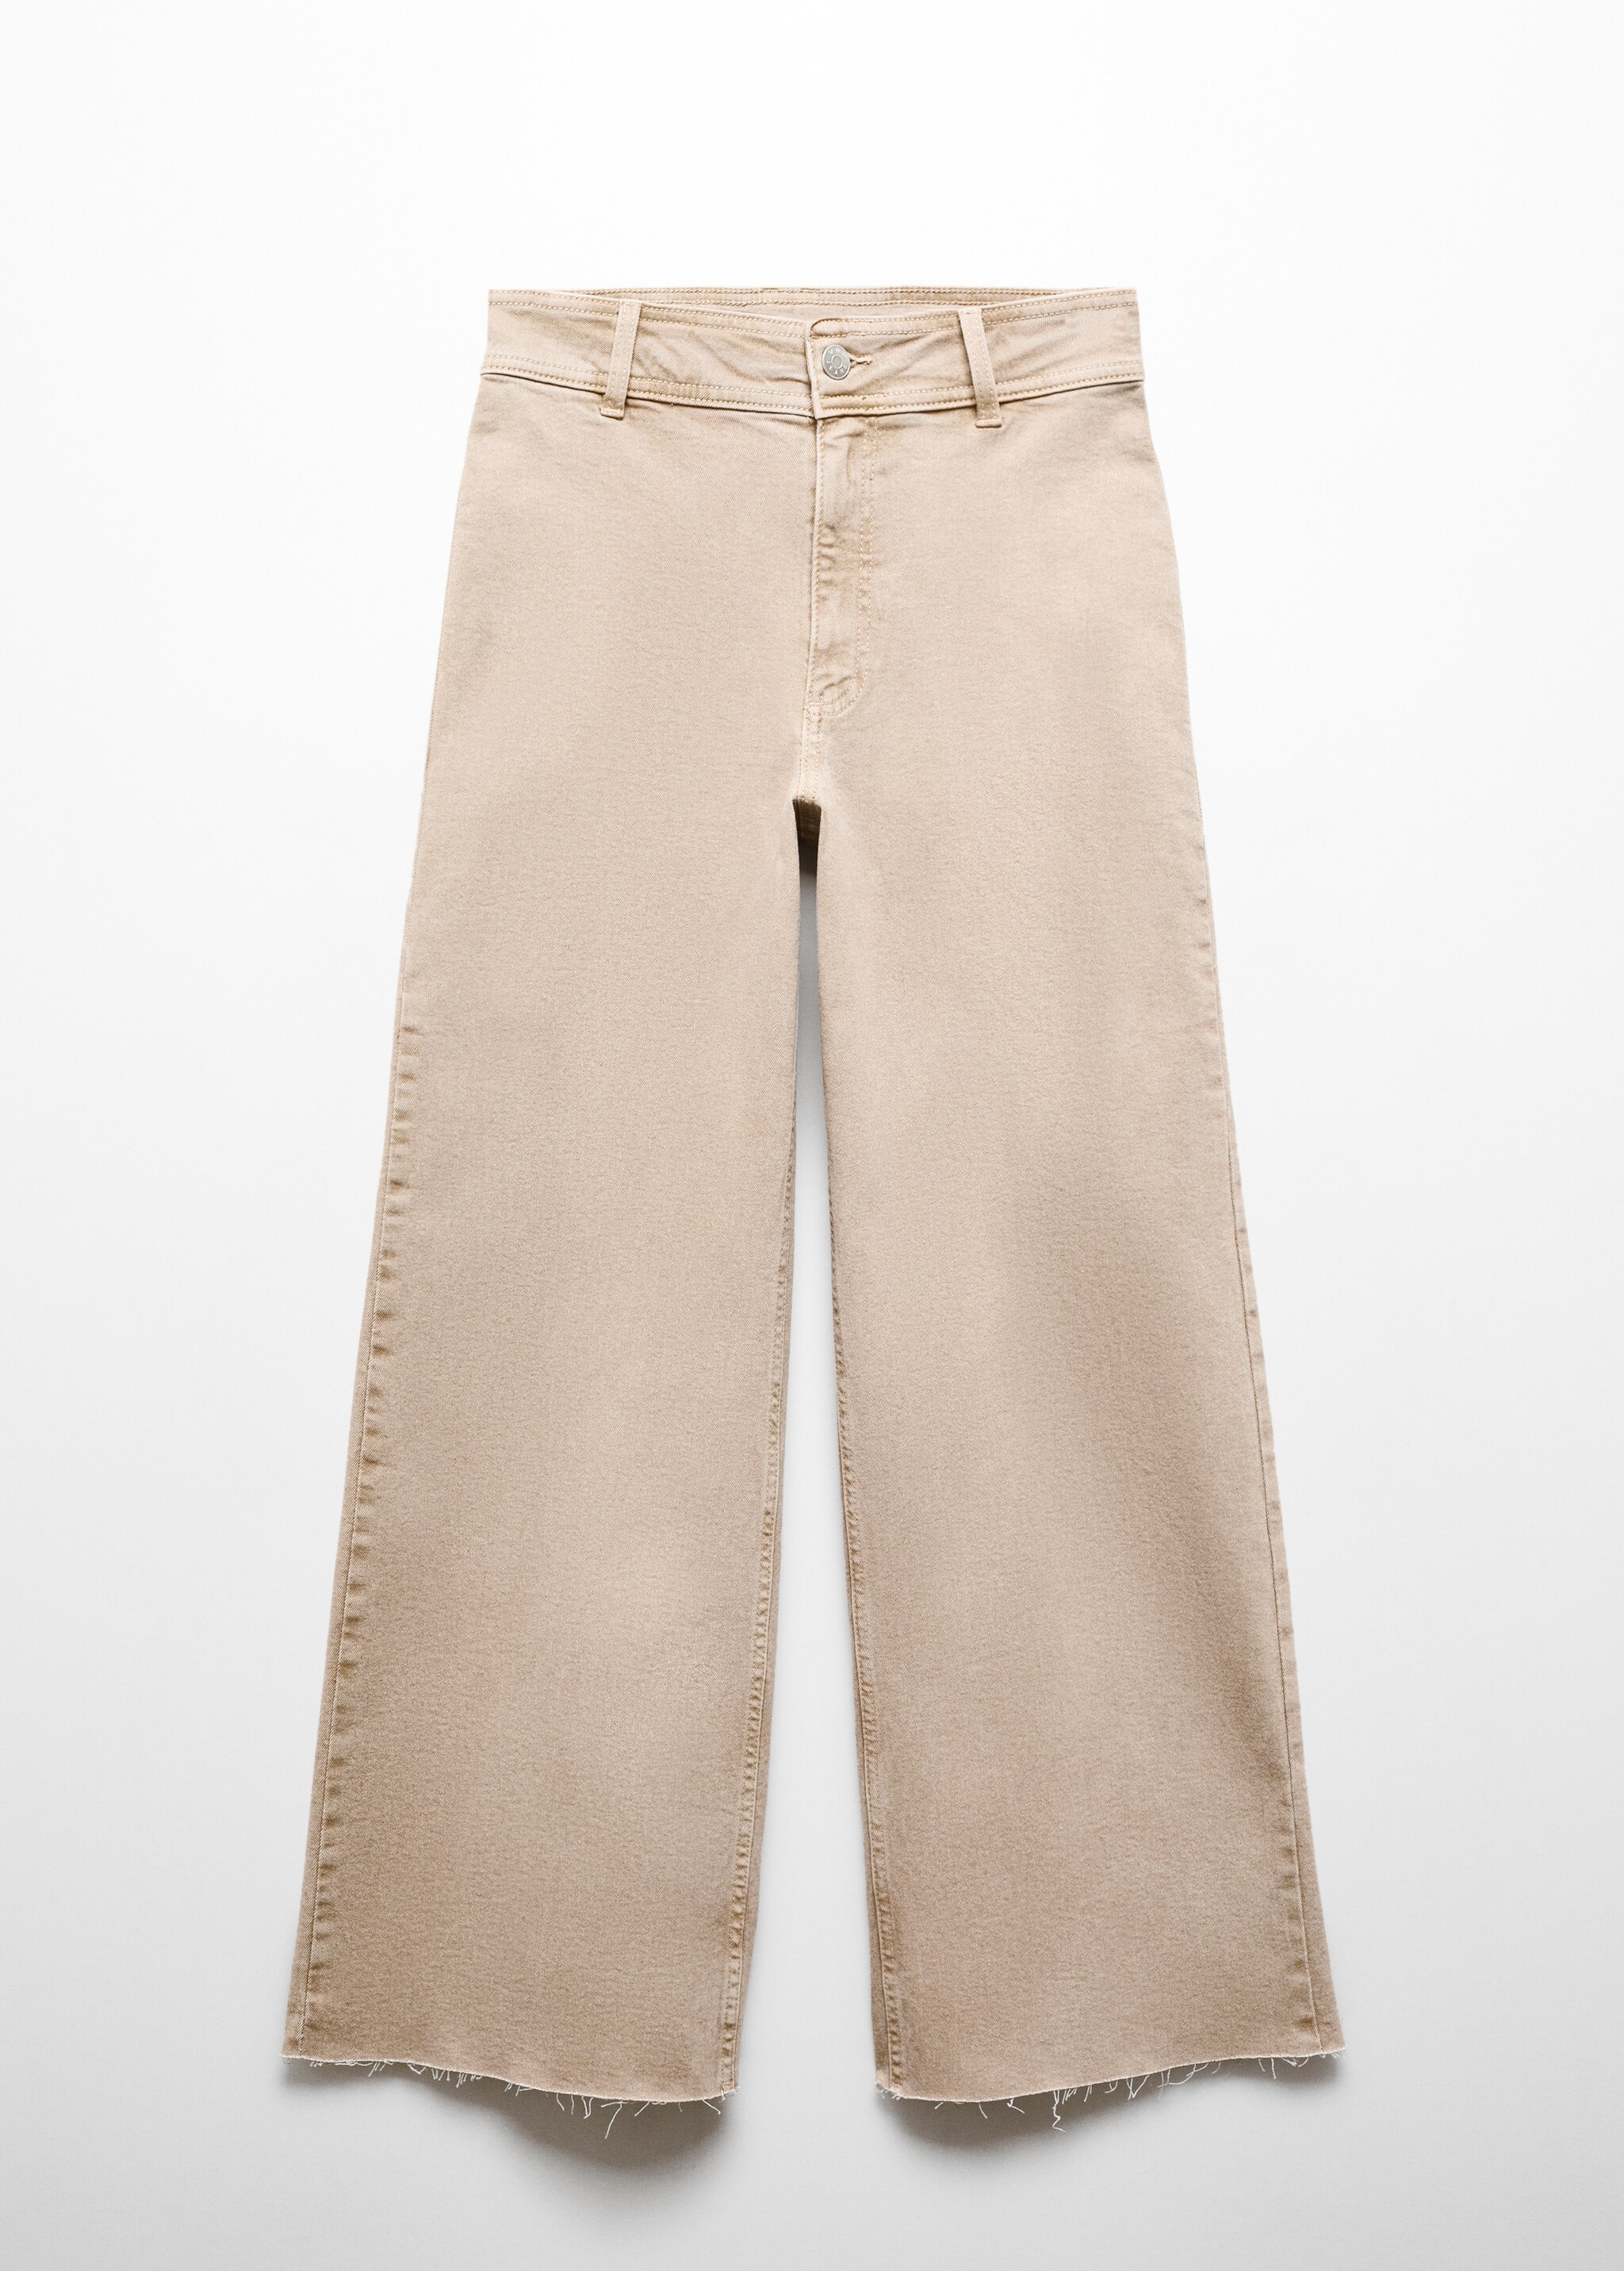 Jeans Catherin culotte vita alta - Articolo senza modello